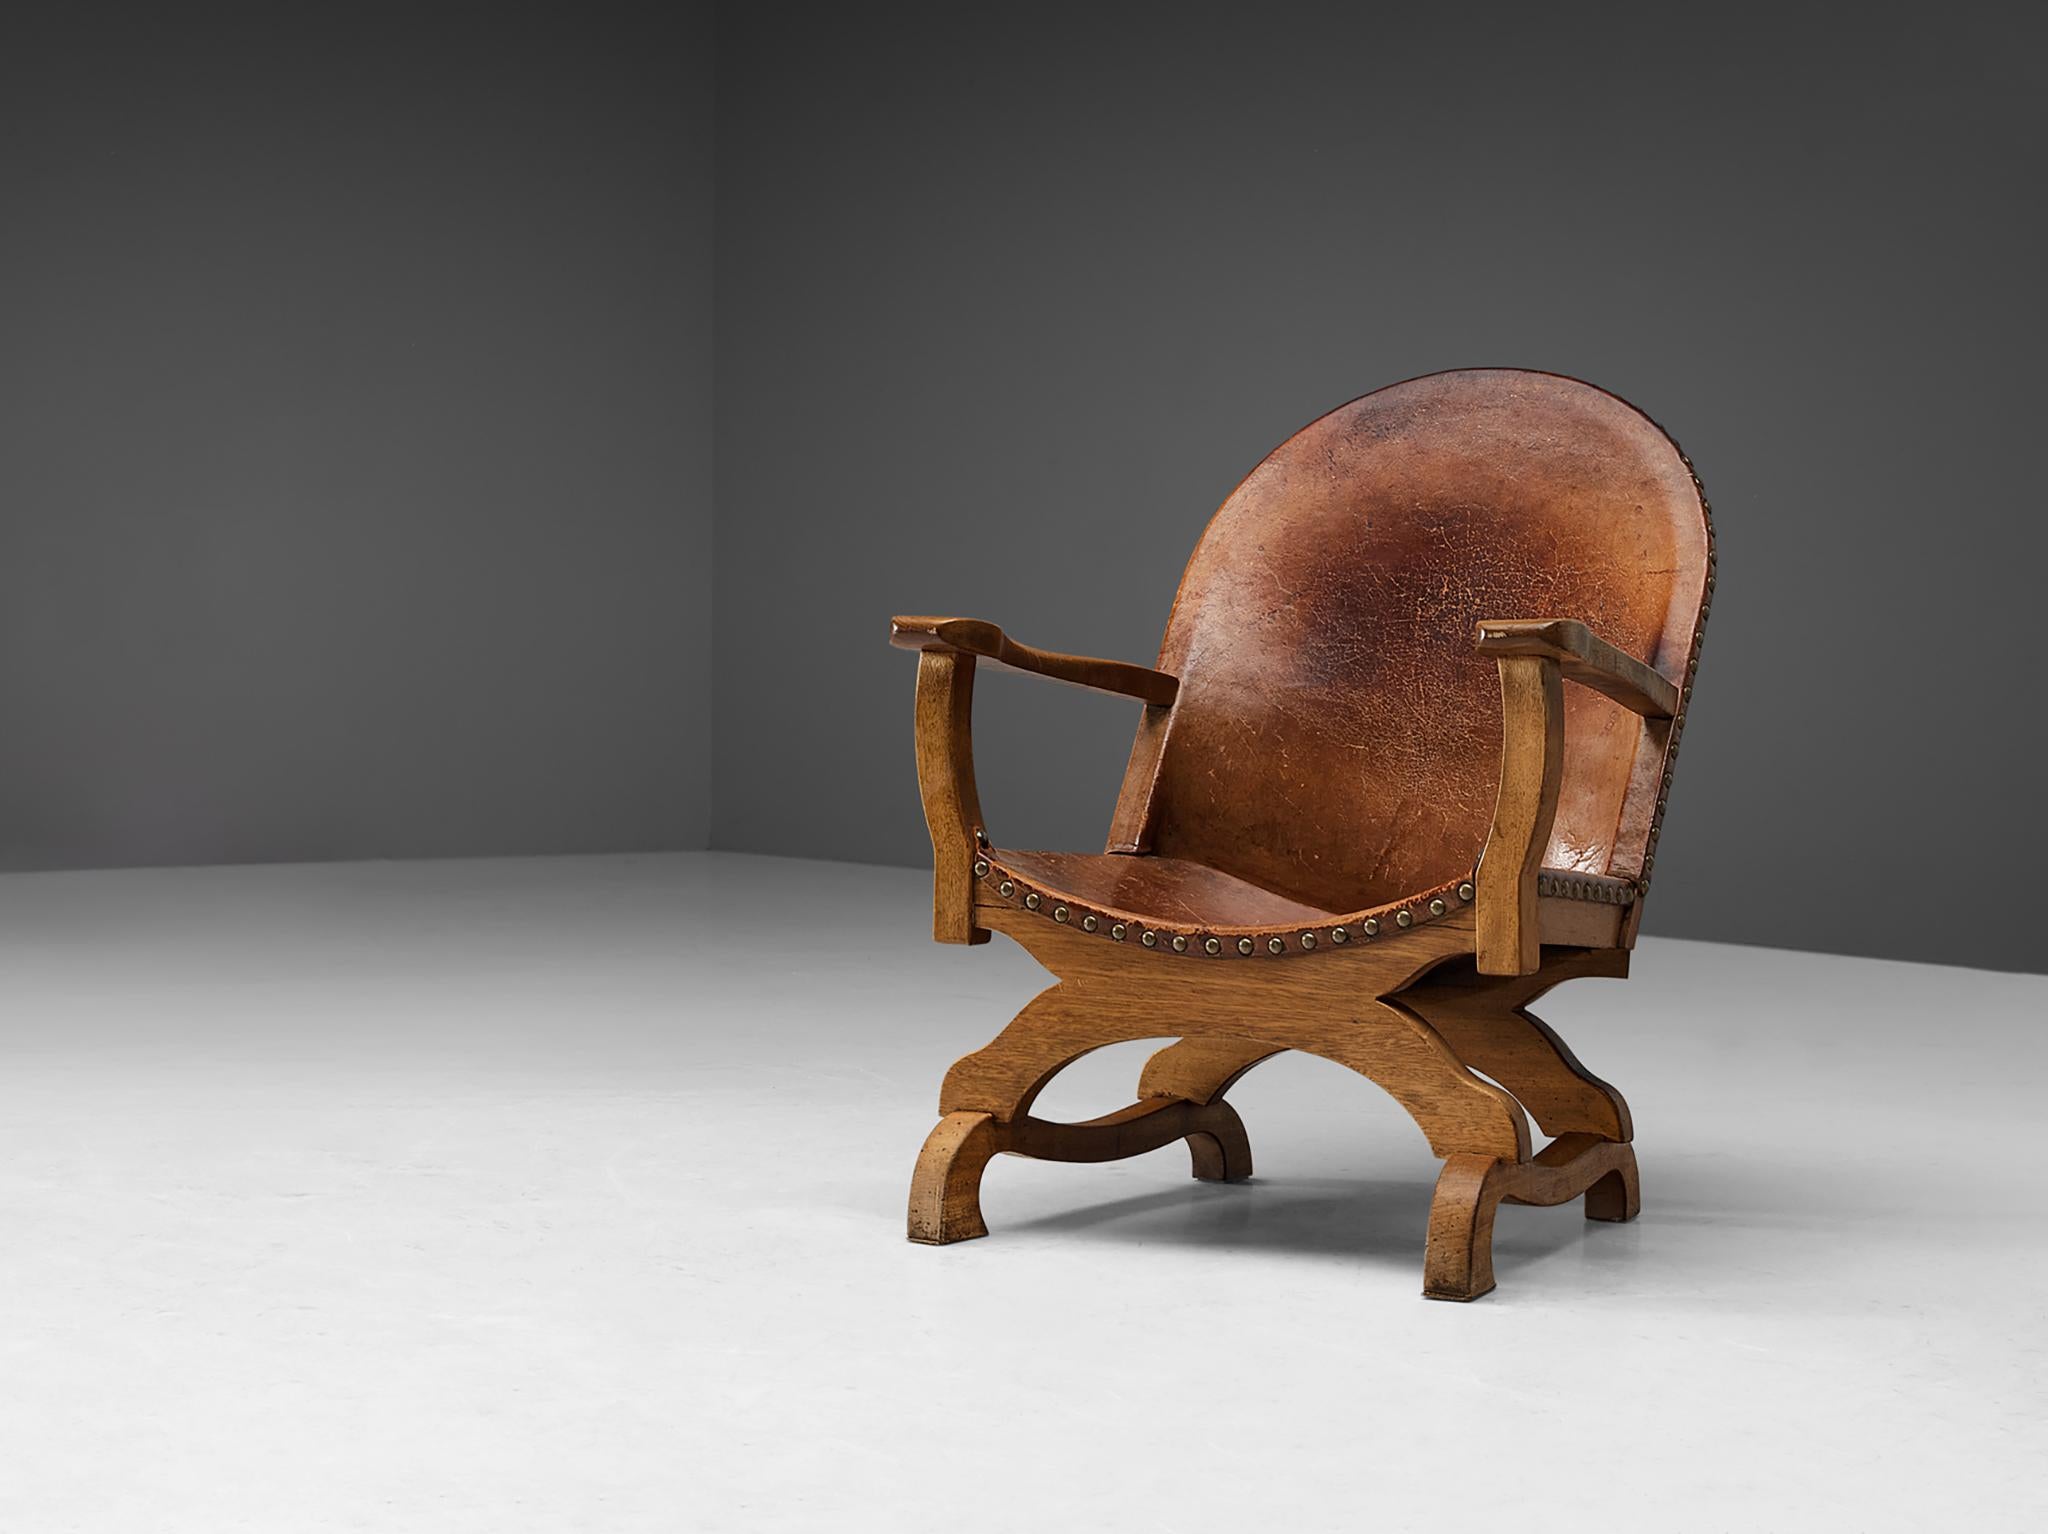 Sessel, Leder, Messing, Eiche, Spanien, 1960er Jahre.

Dieser Sessel stammt aus Spanien und ist stilistisch dem späten 19. Jahrhundert zuzuordnen. Die Konstruktion des Fußes ähnelt dem im Spanischen als 